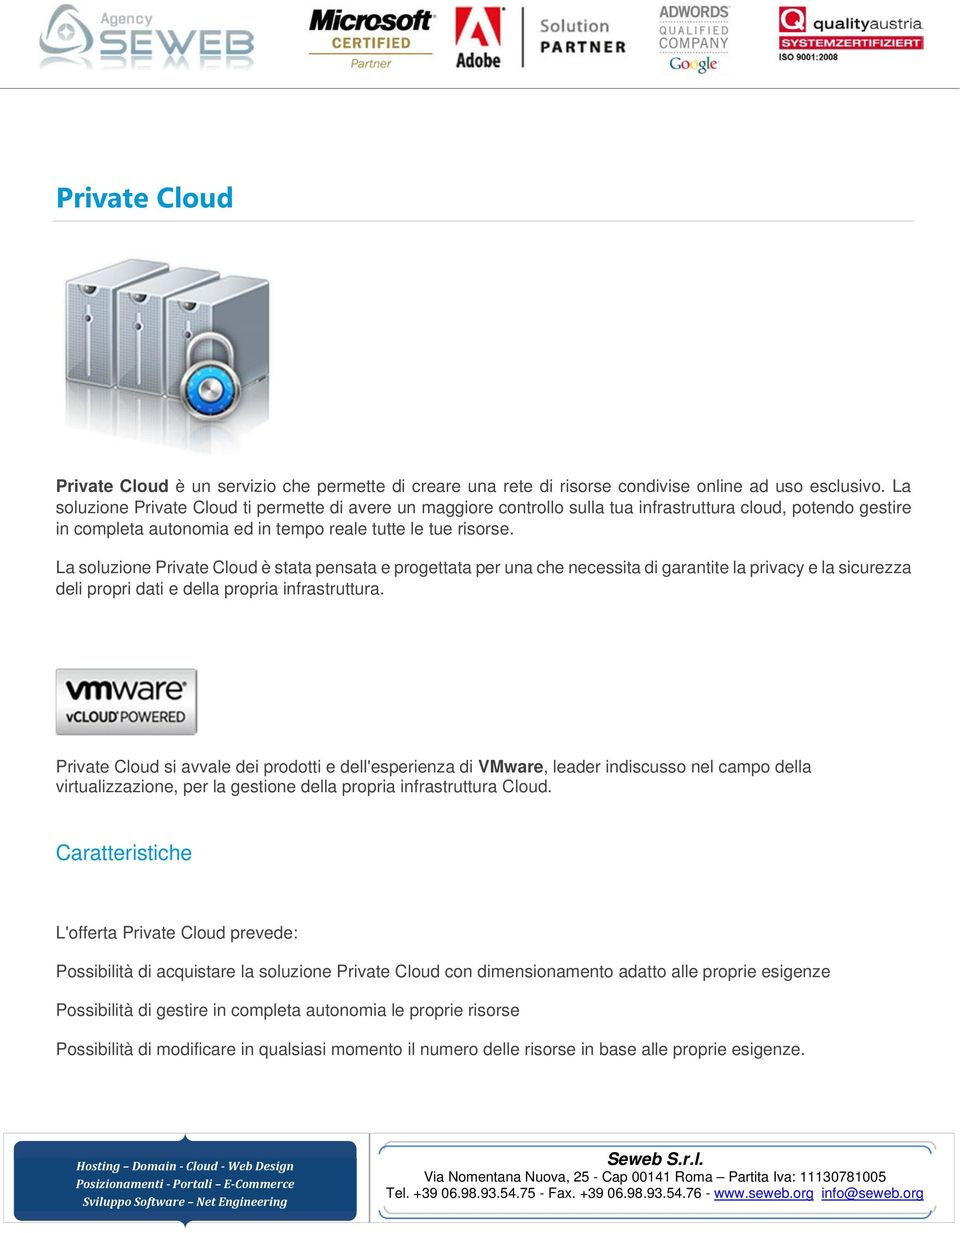 La soluzione Private Cloud è stata pensata e progettata per una che necessita di garantite la privacy e la sicurezza deli propri dati e della propria infrastruttura.